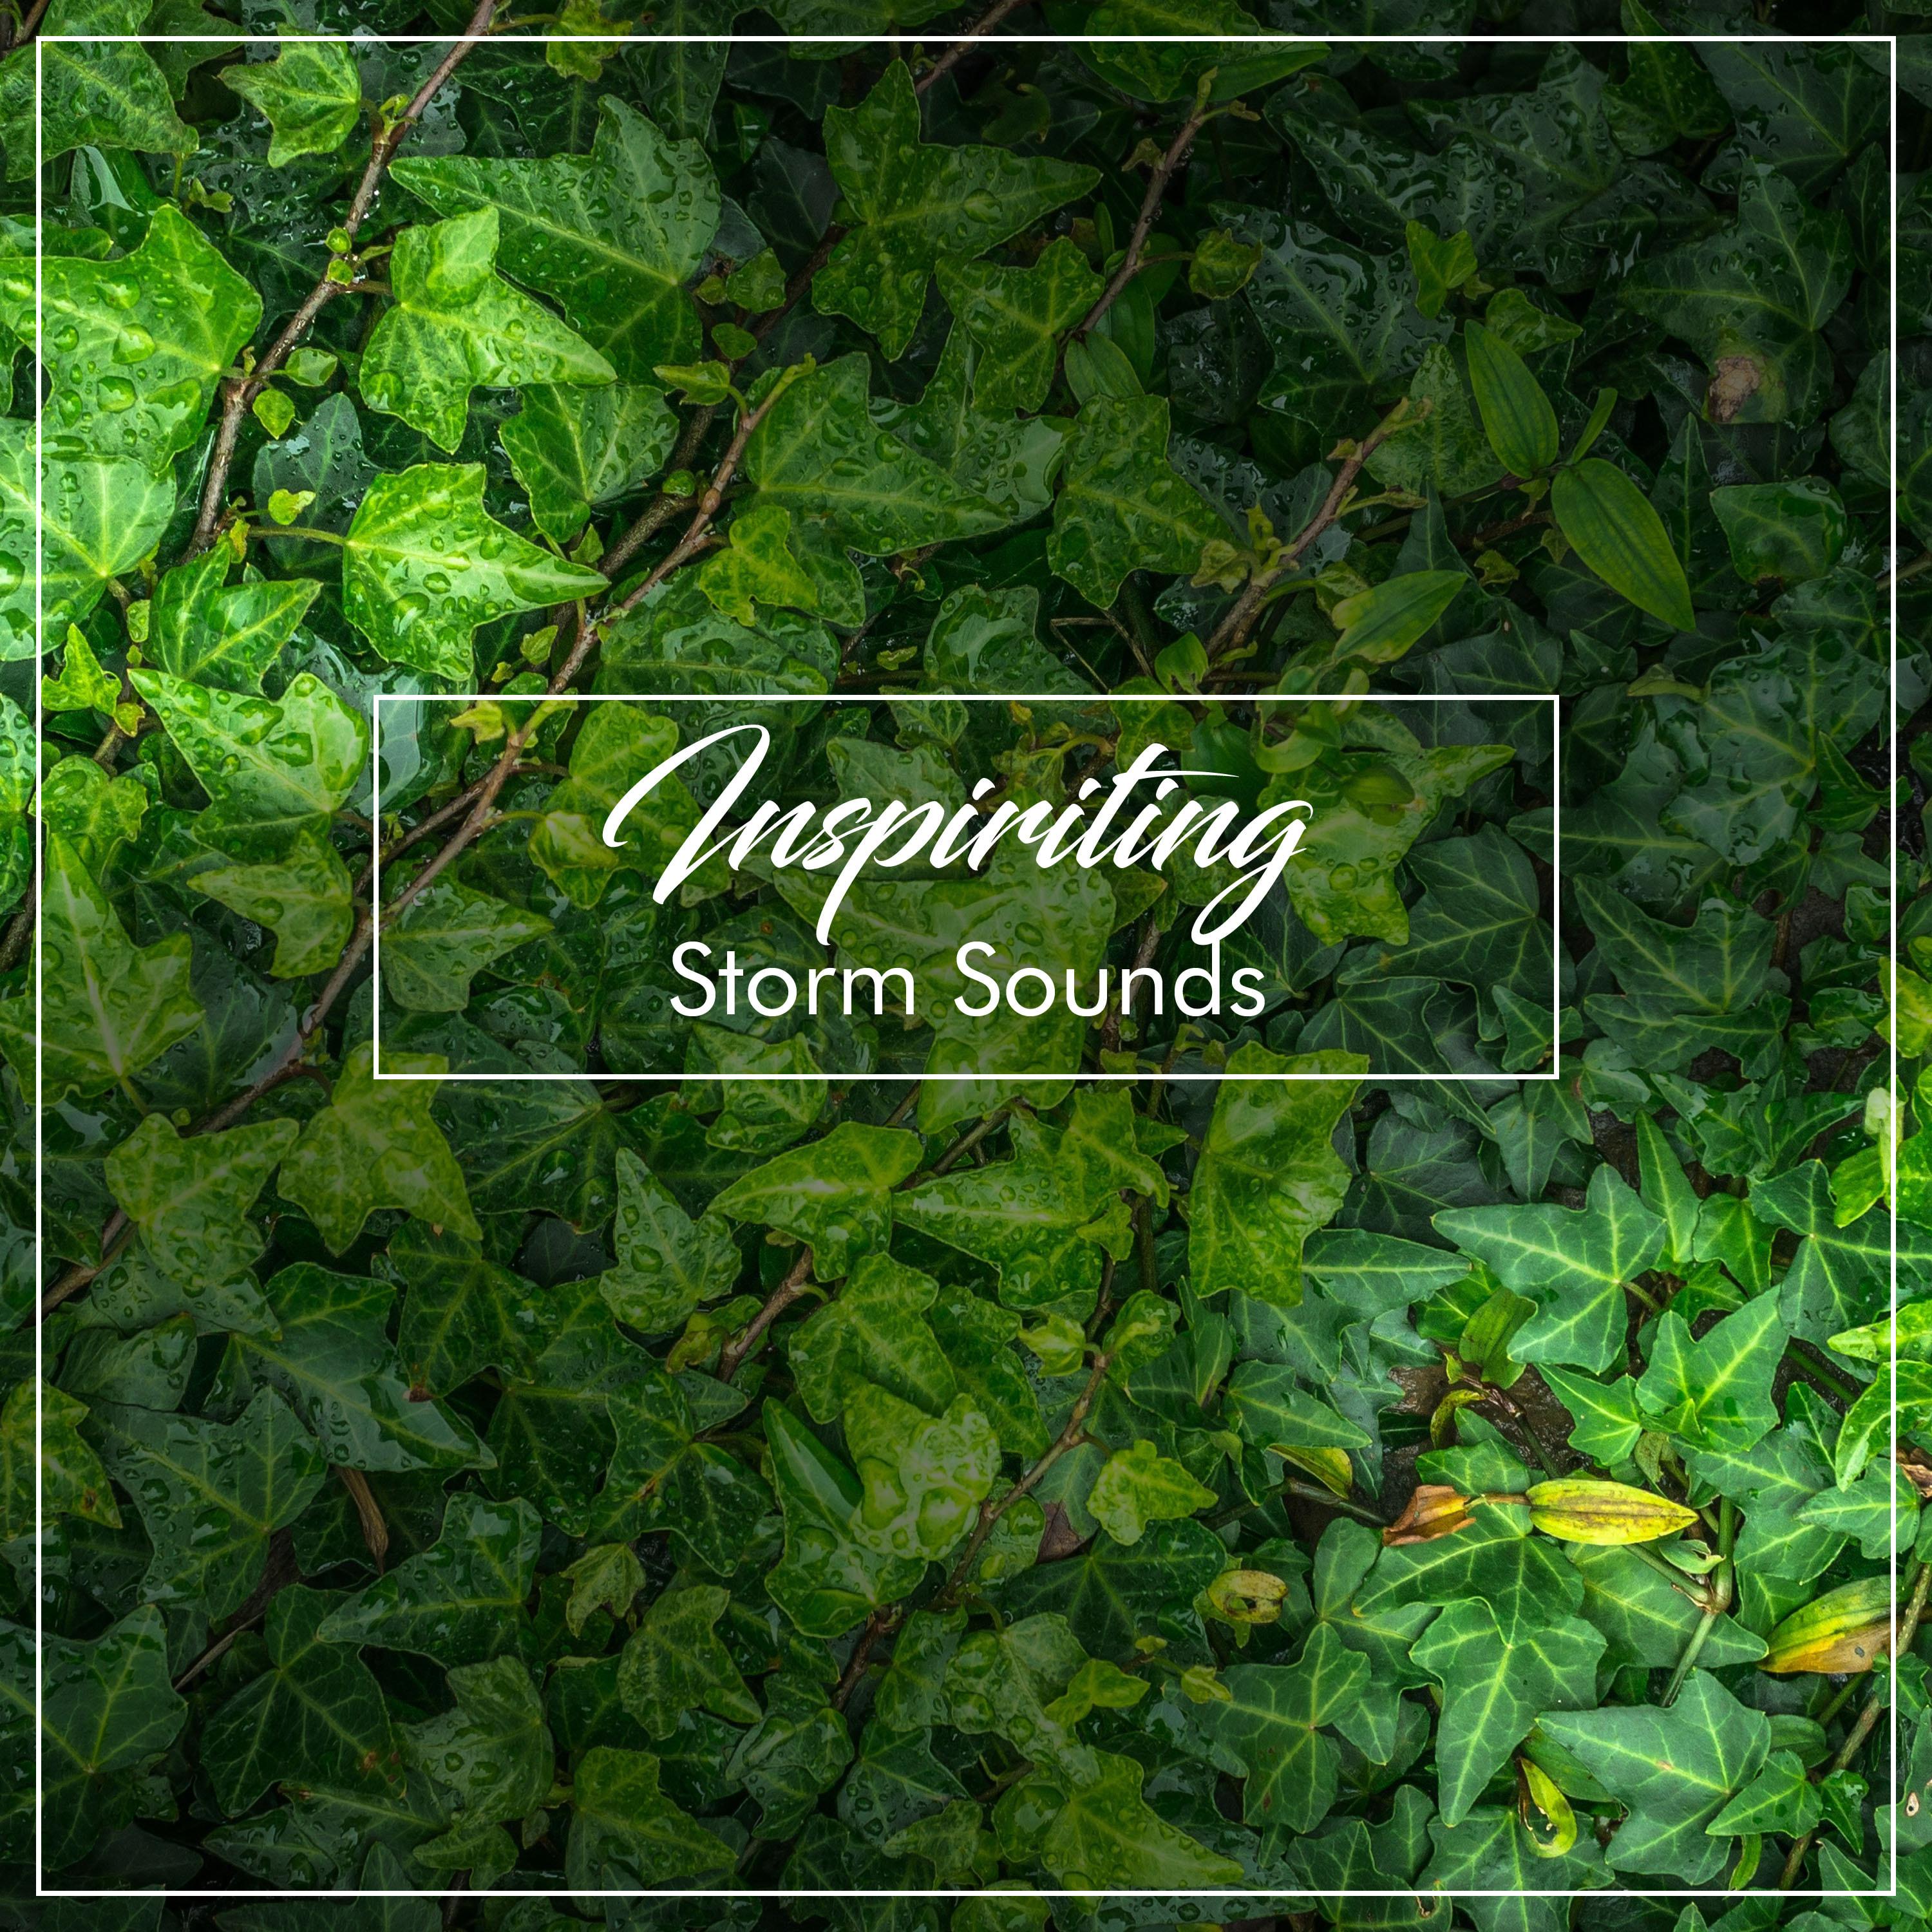 #18 Inspiriting Storm Sounds